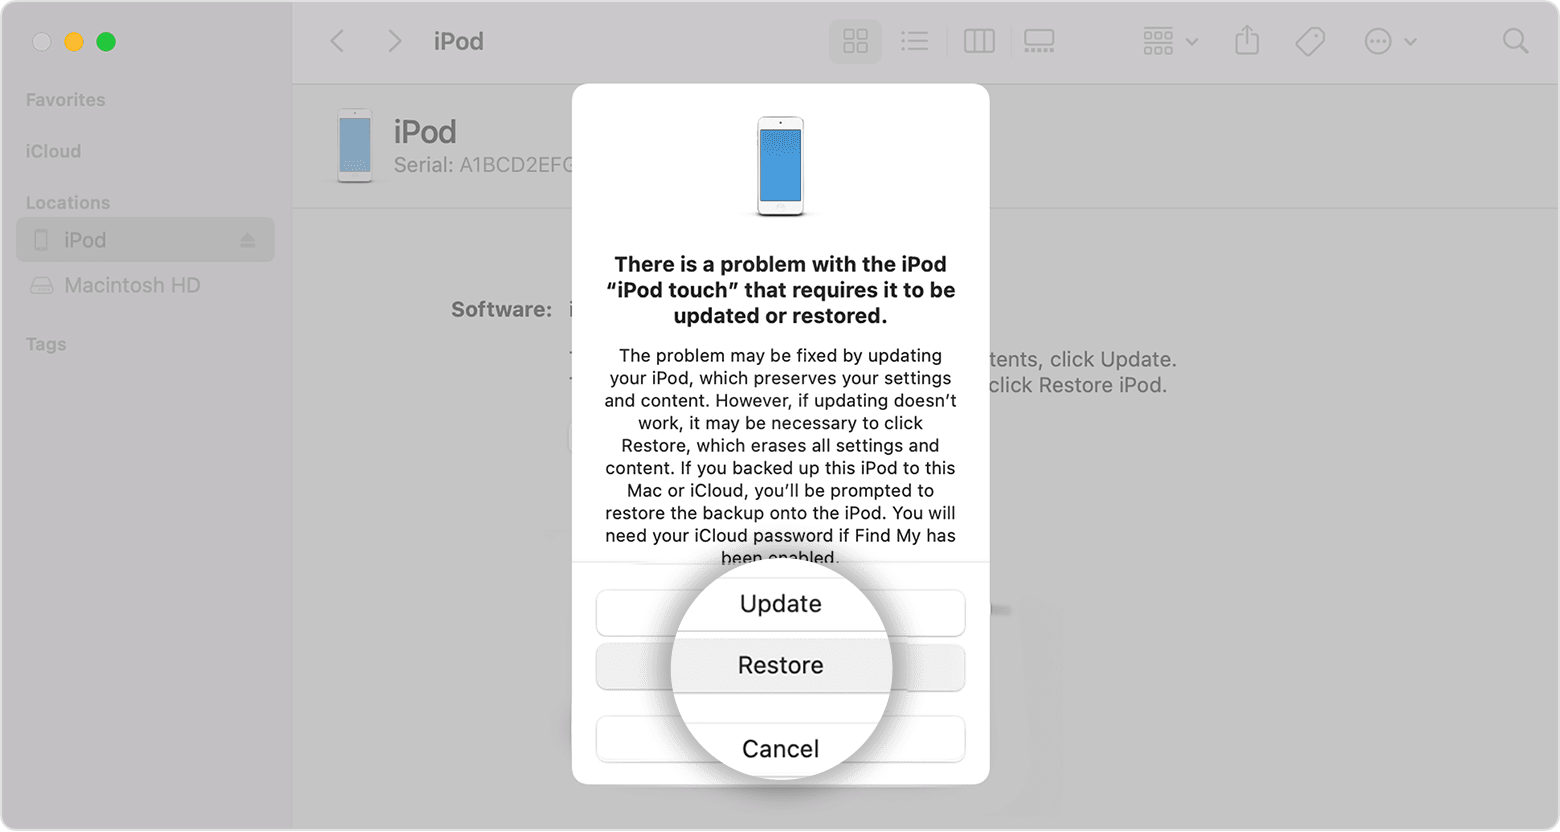 Mac 視窗顯示著「還原」按鈕